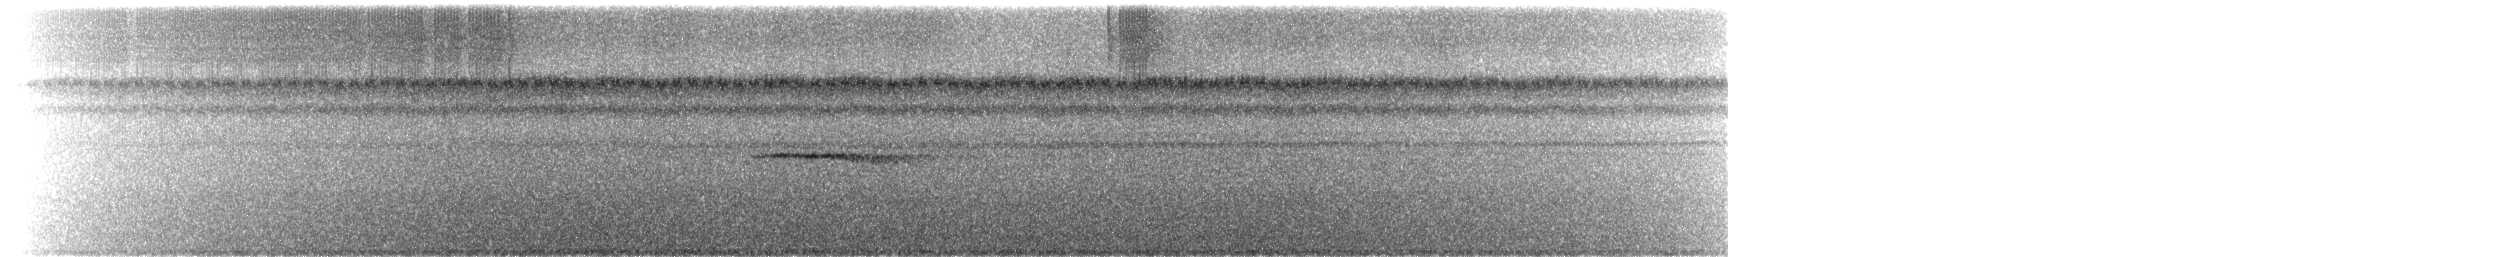 Tinamou de Berlepsch - ML244670